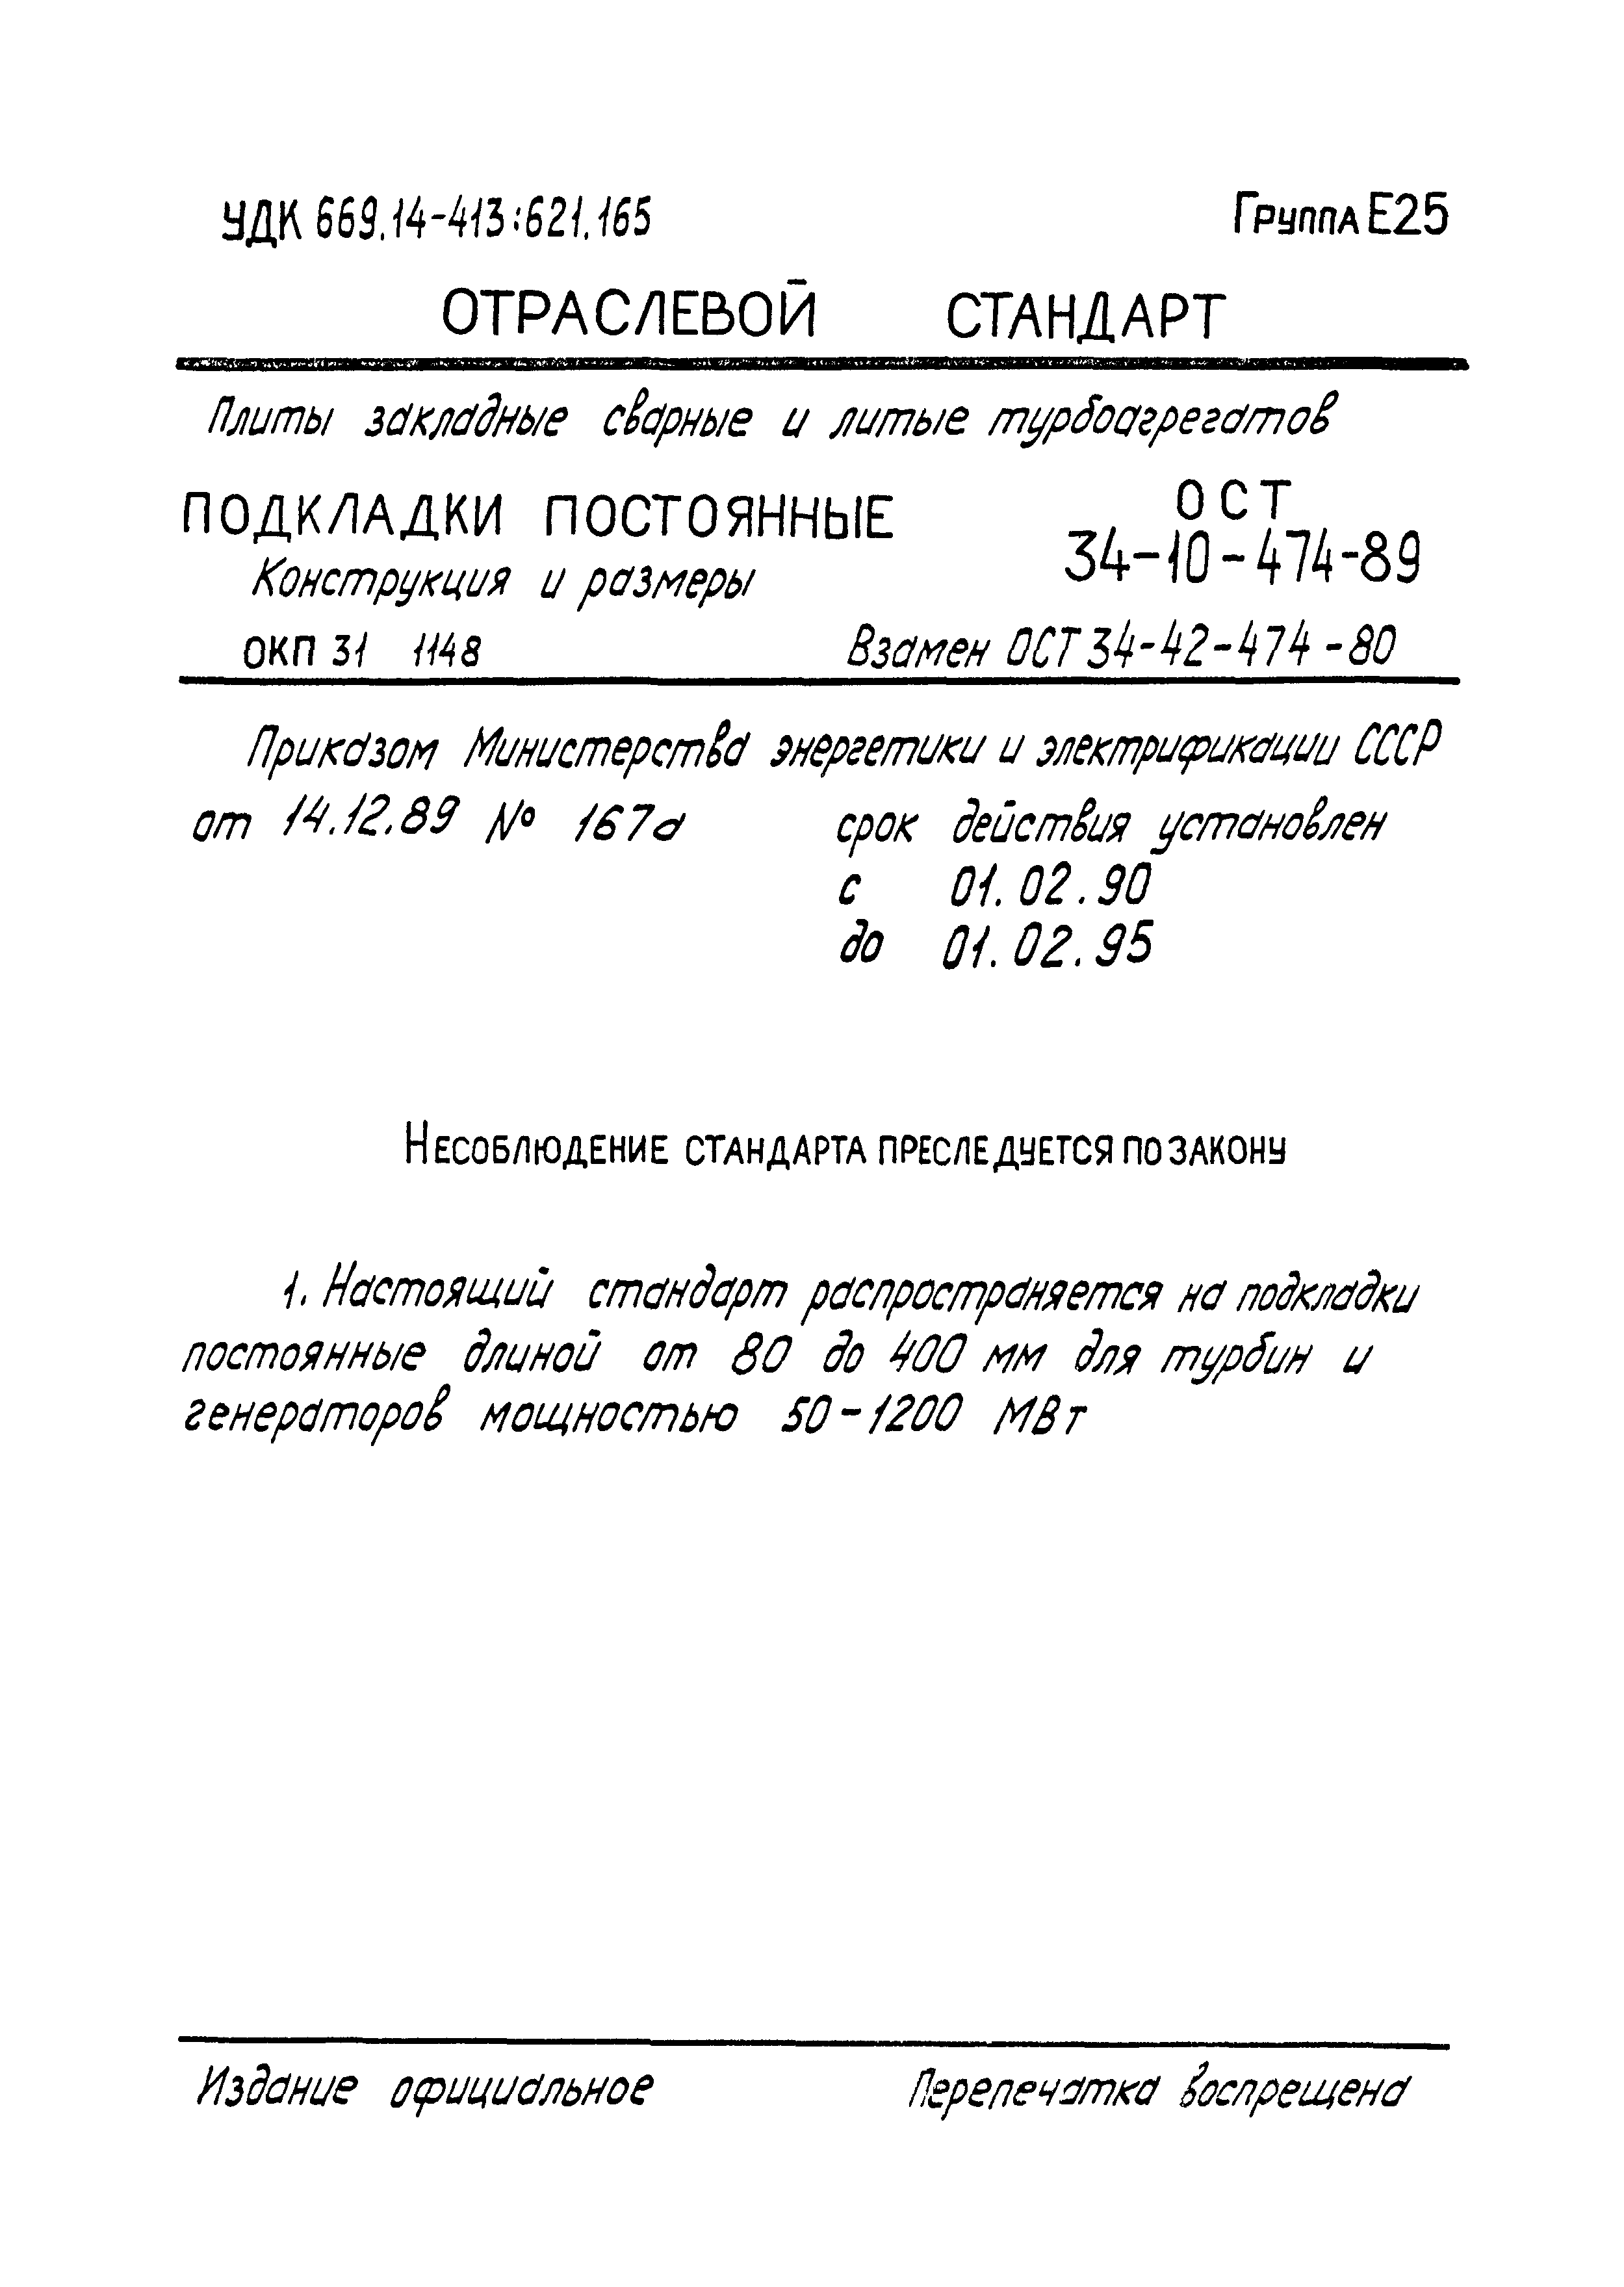 ОСТ 34-10-474-89